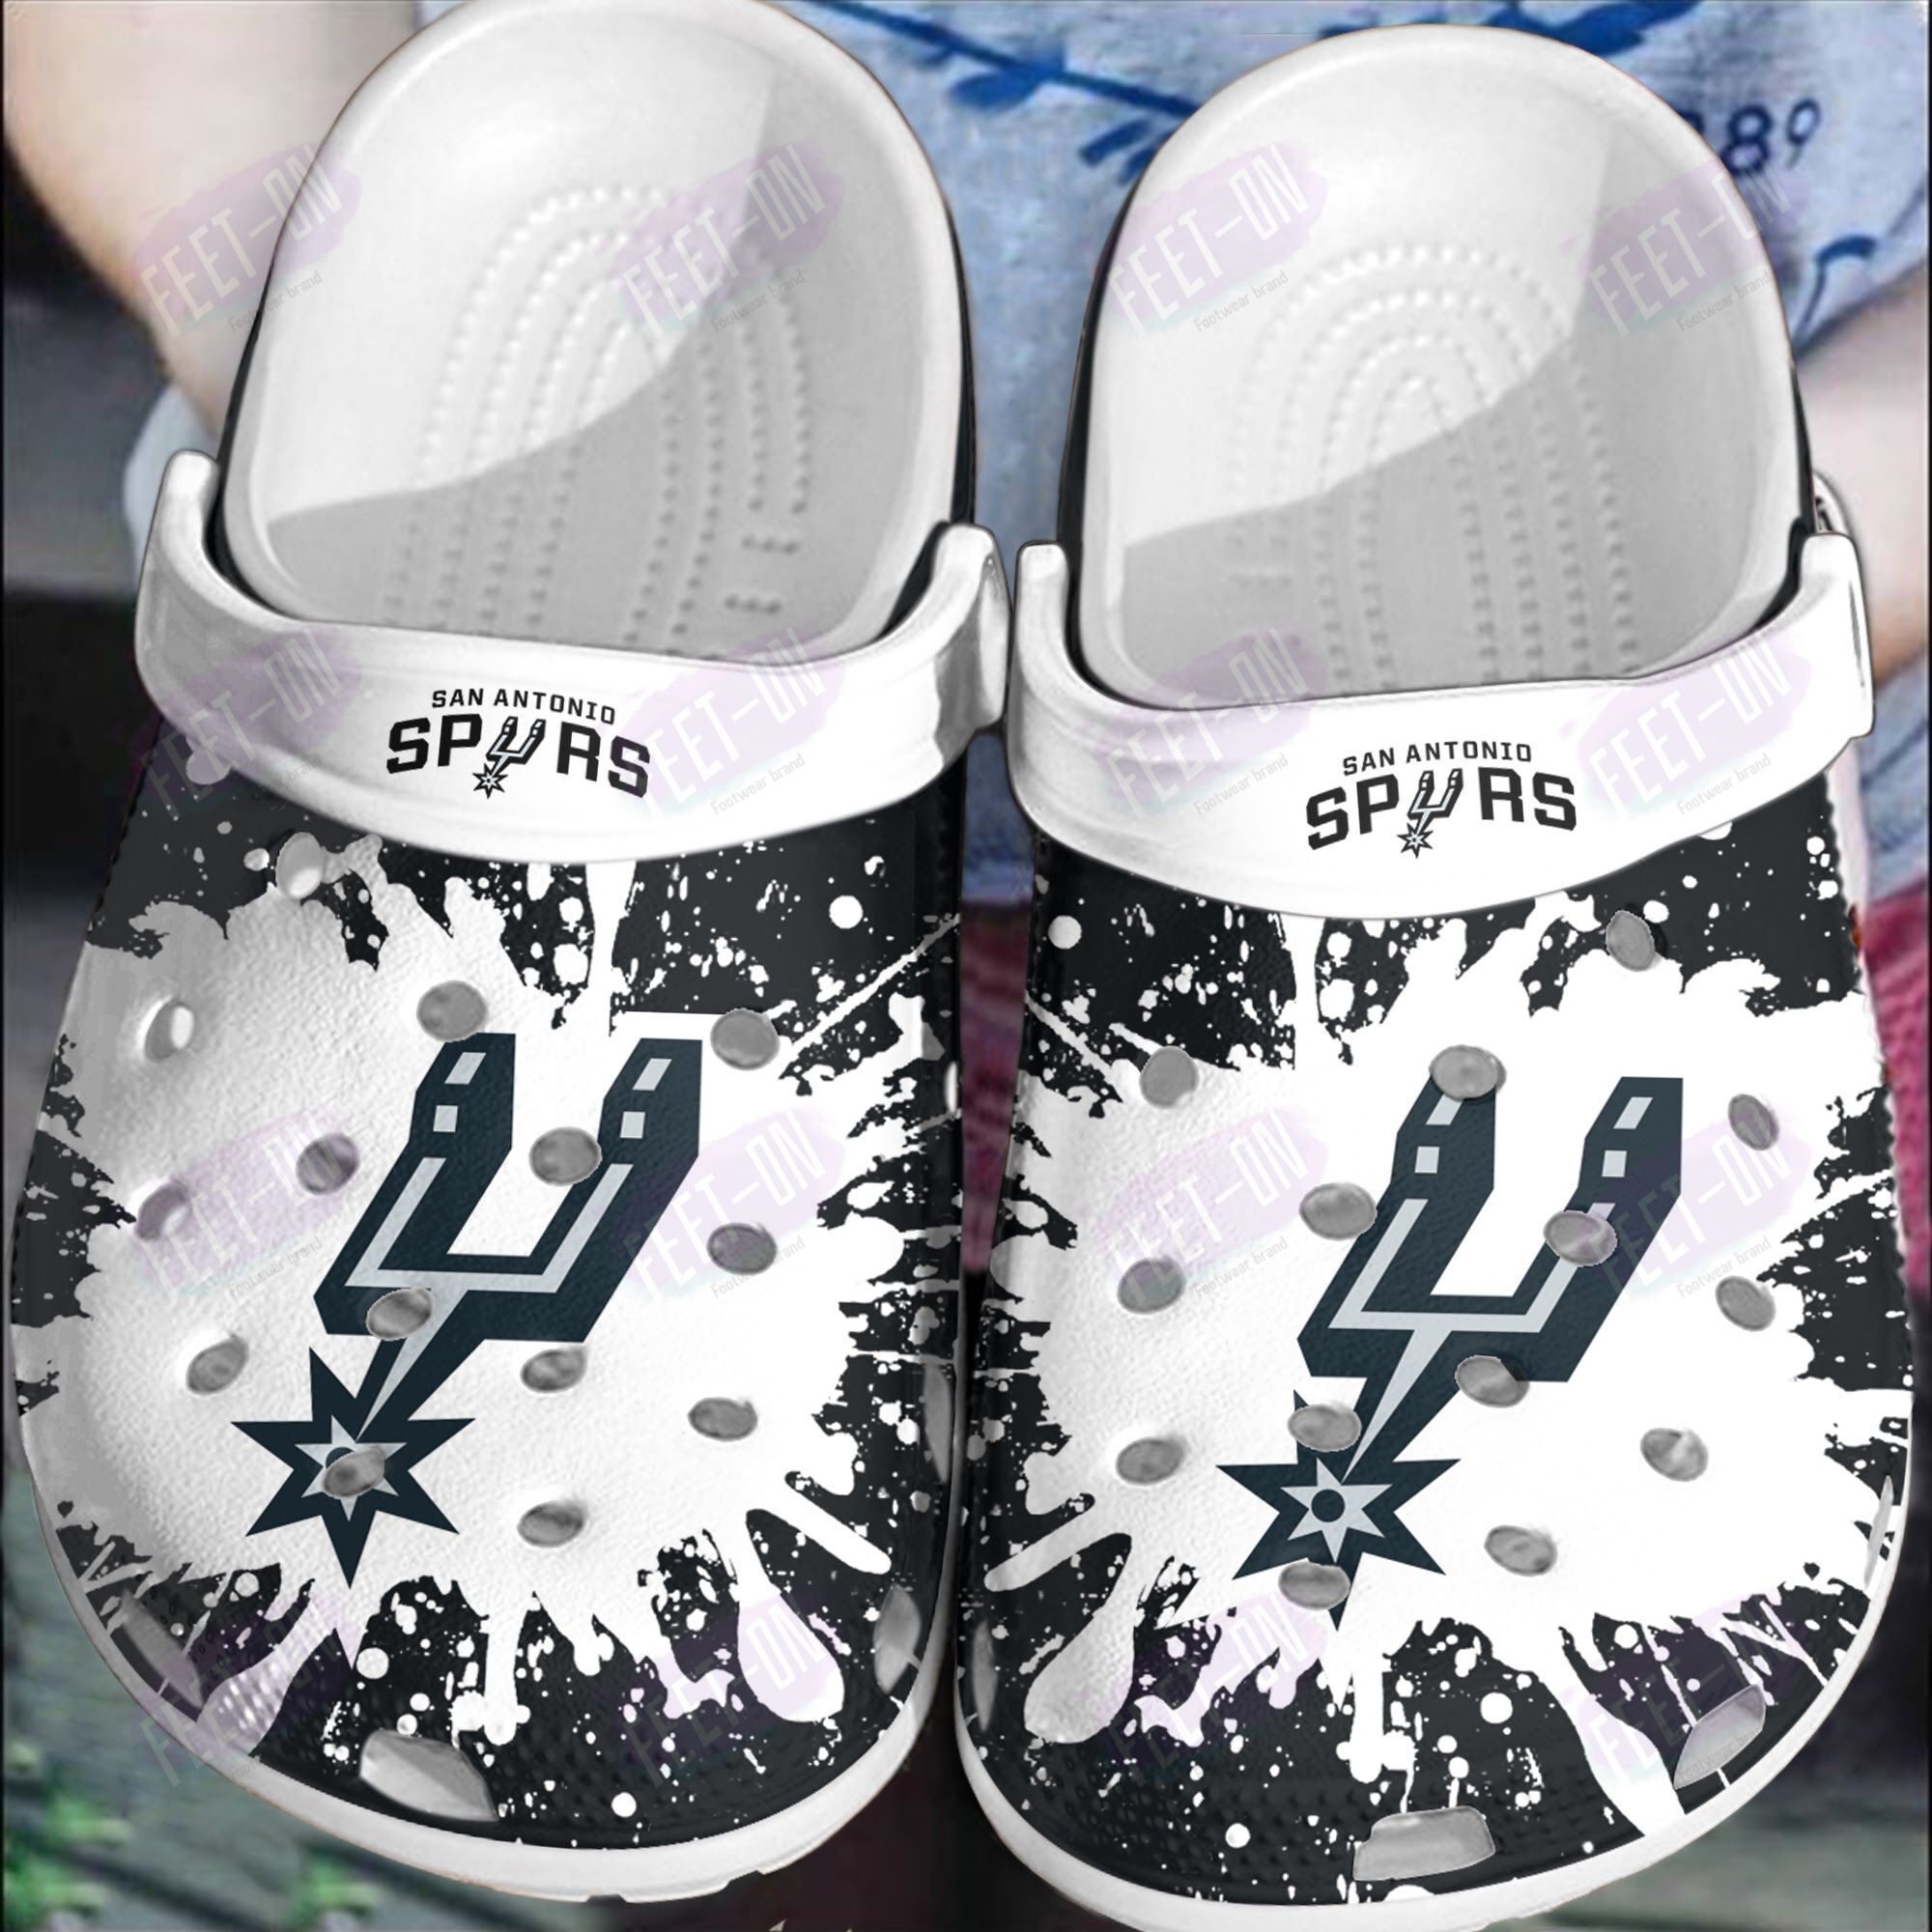 BEST San Antonio Spurs NBA crocs crocband Shoes